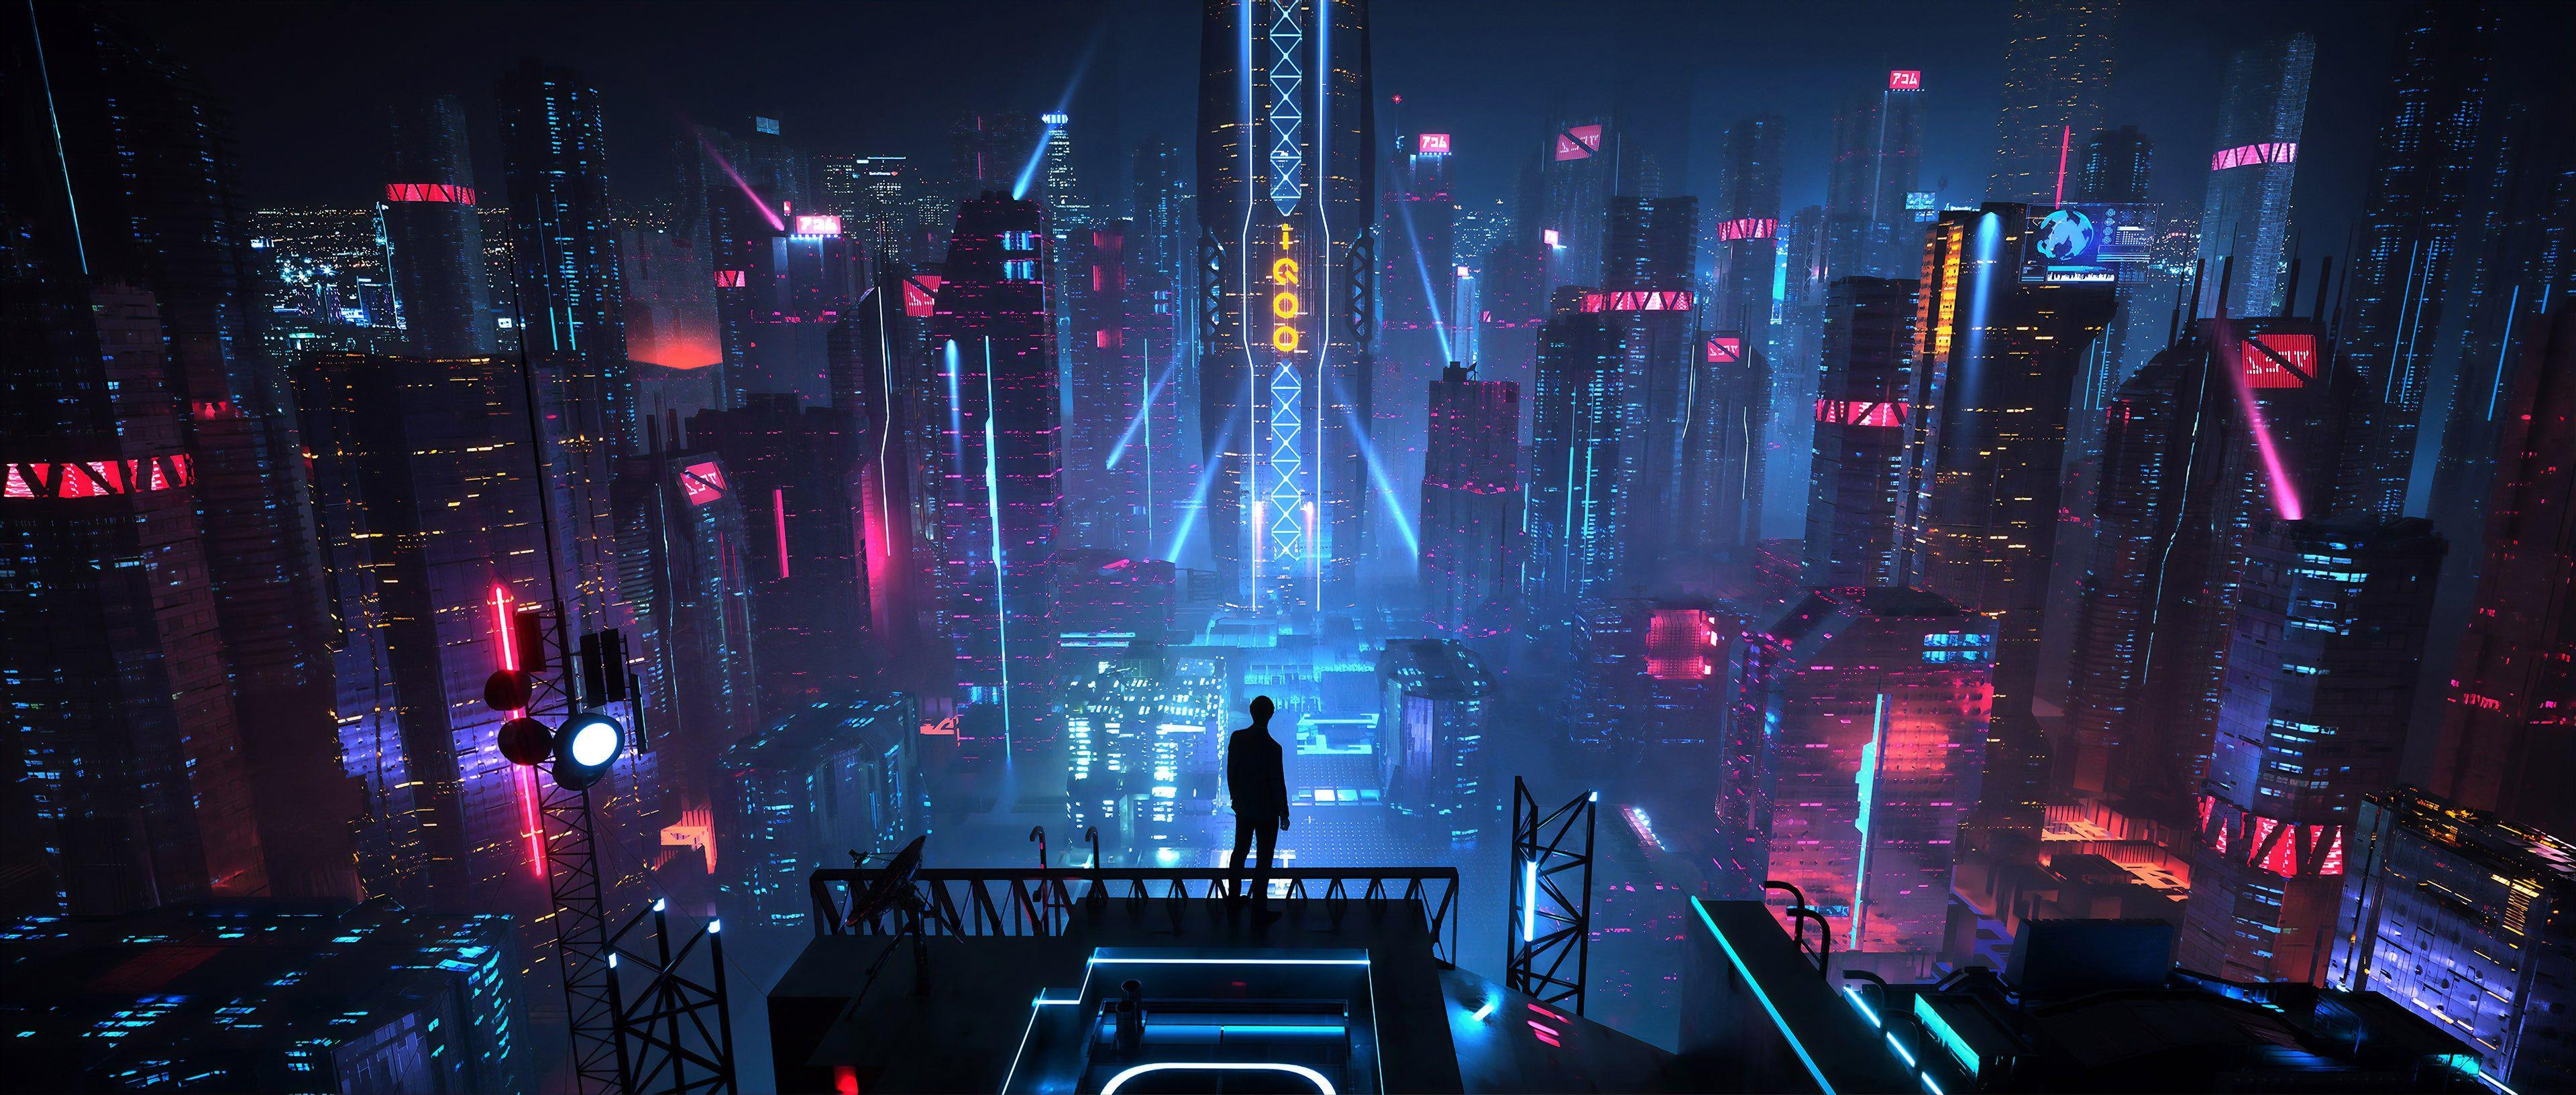 3840x1633 Hình nền thành phố Cyberpunk - Đêm thành phố khoa học viễn tưởng - Hình nền 3840x1633 - teahub.io